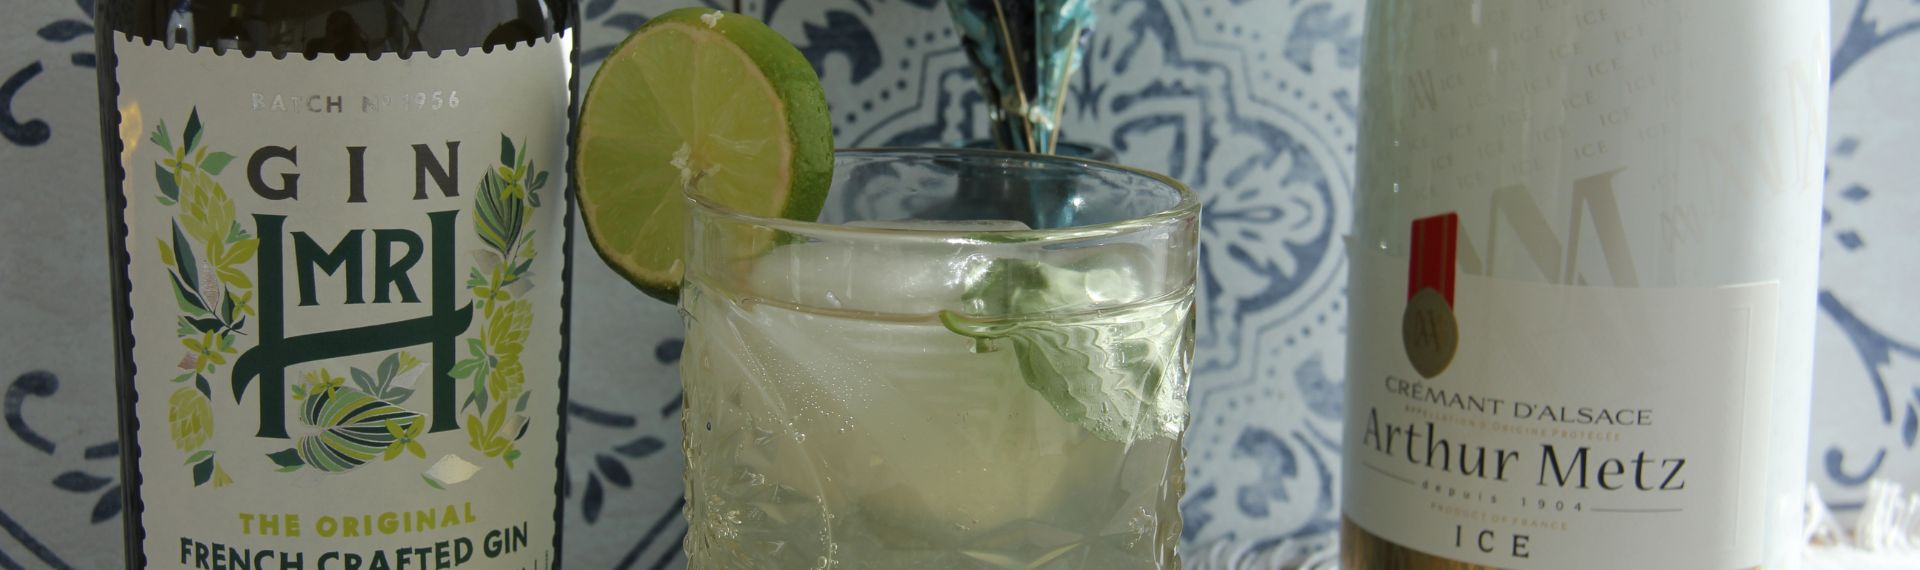 cocktail avec crémant arthur metz ice blanc et gin mr h